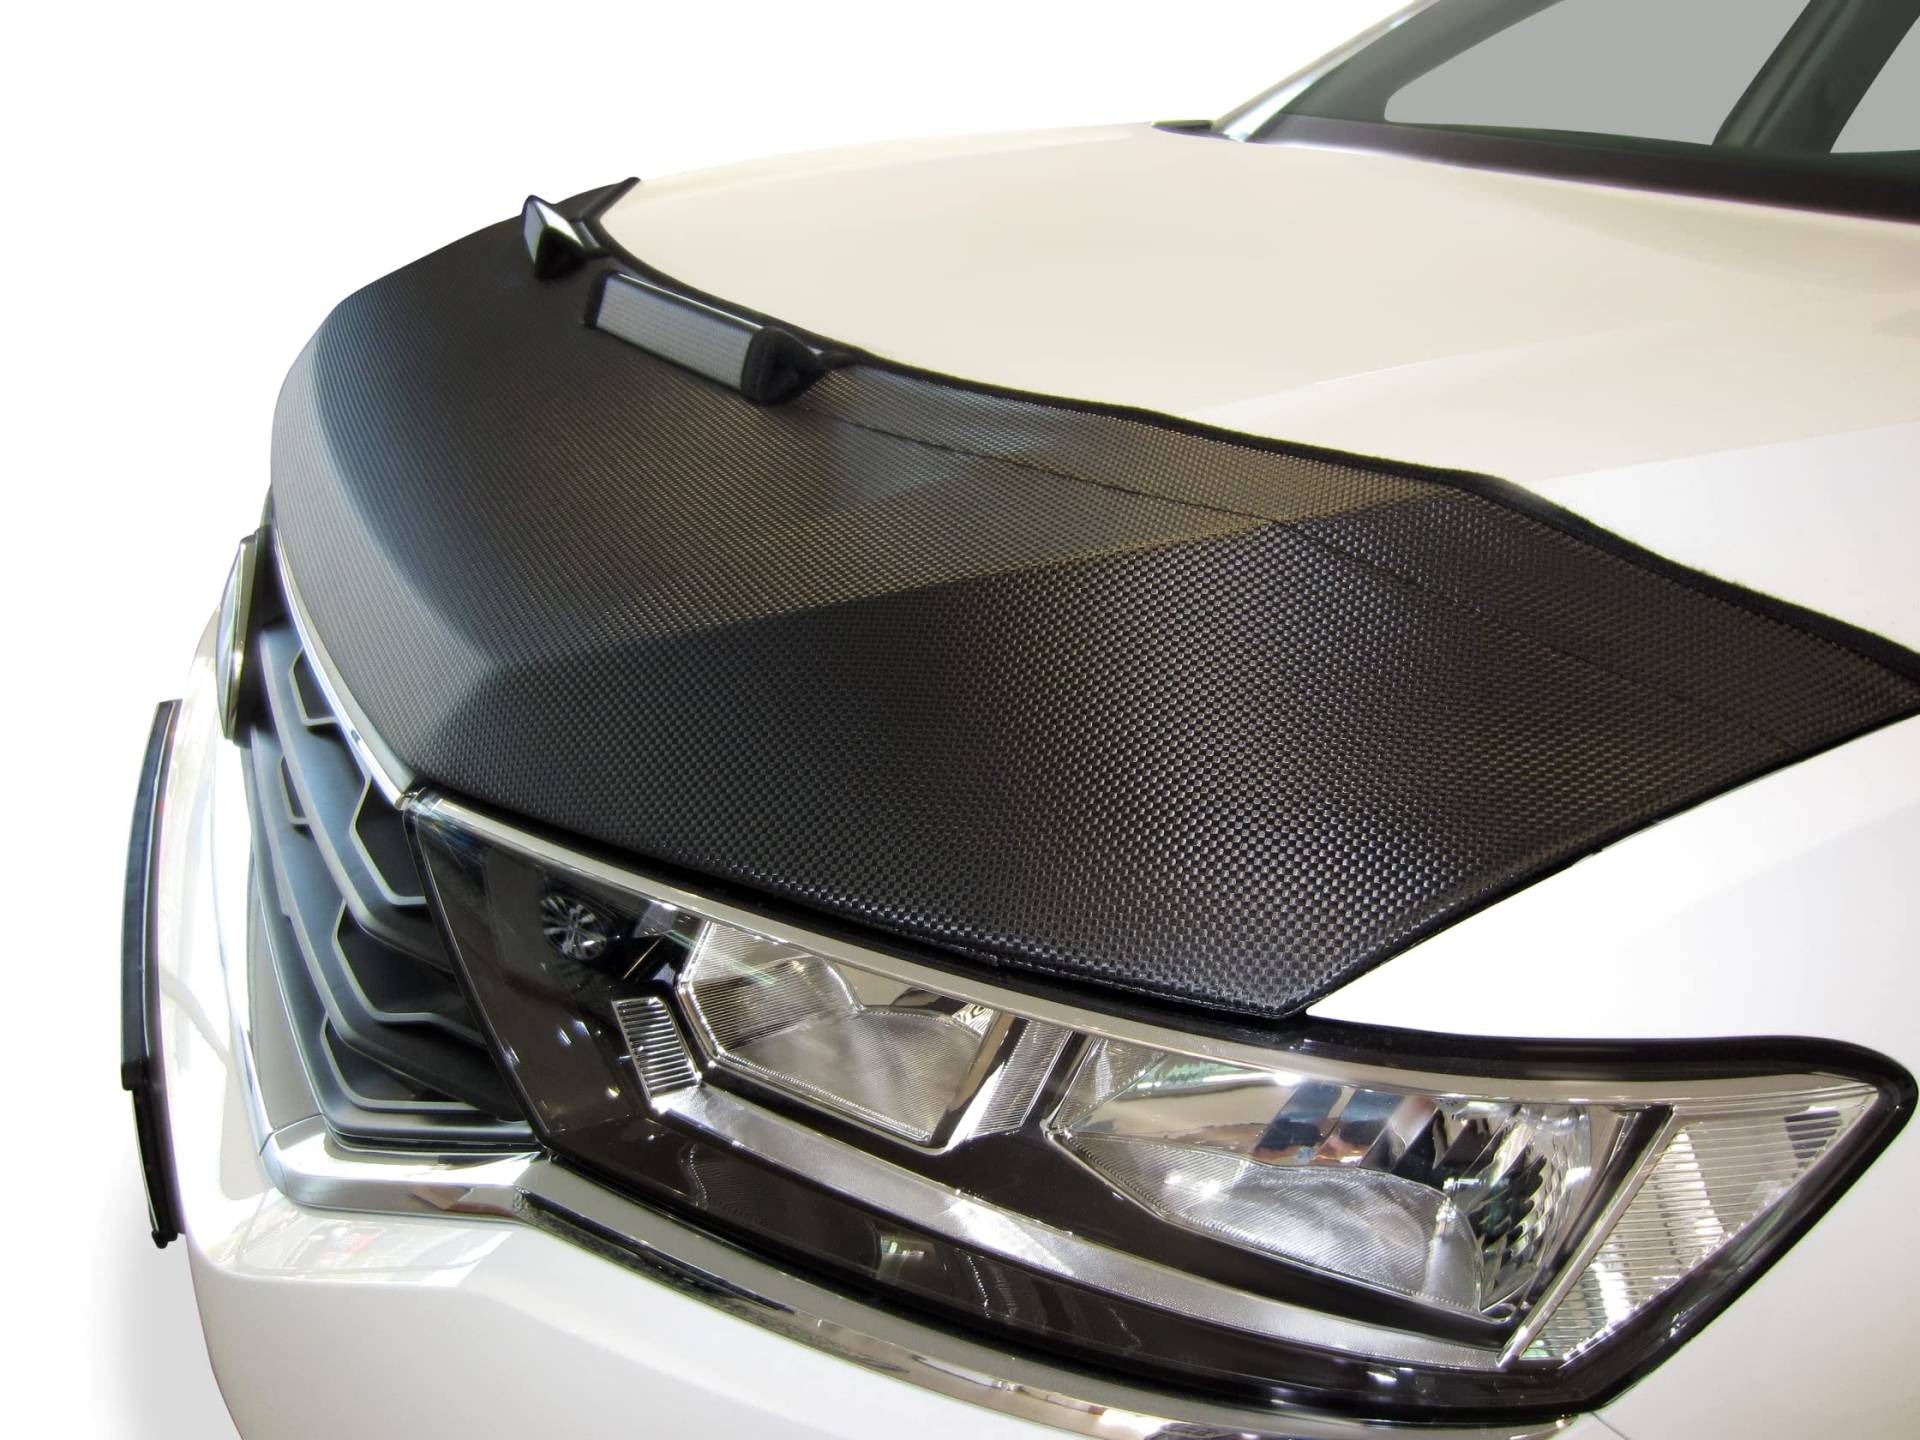 AB3-00151 Carbon Optik Auto Bra kompatibel mit MB Mercedes Benz GL GLS X166 Bj. 2012-2016 Haubenbra Steinschlagschutz Tuning Bonnet Bra von AUTO-BRA